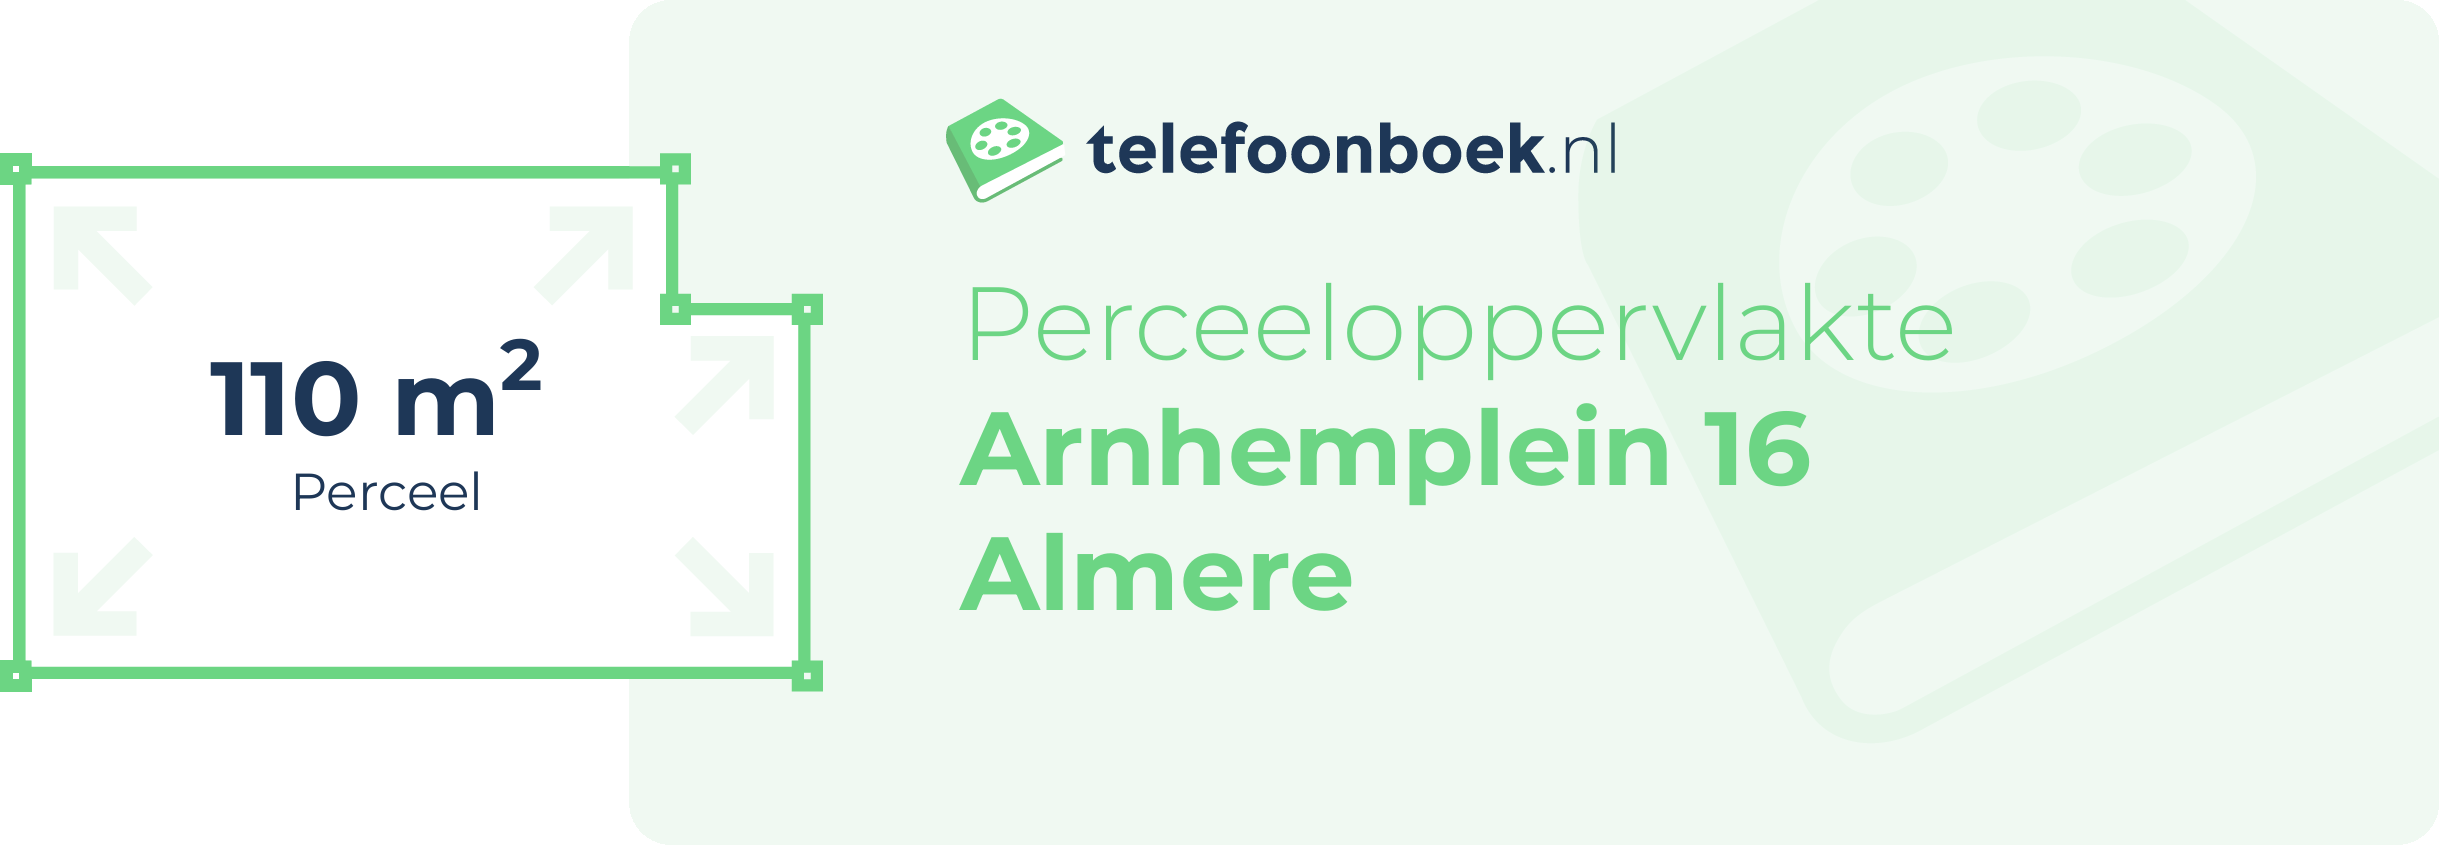 Perceeloppervlakte Arnhemplein 16 Almere